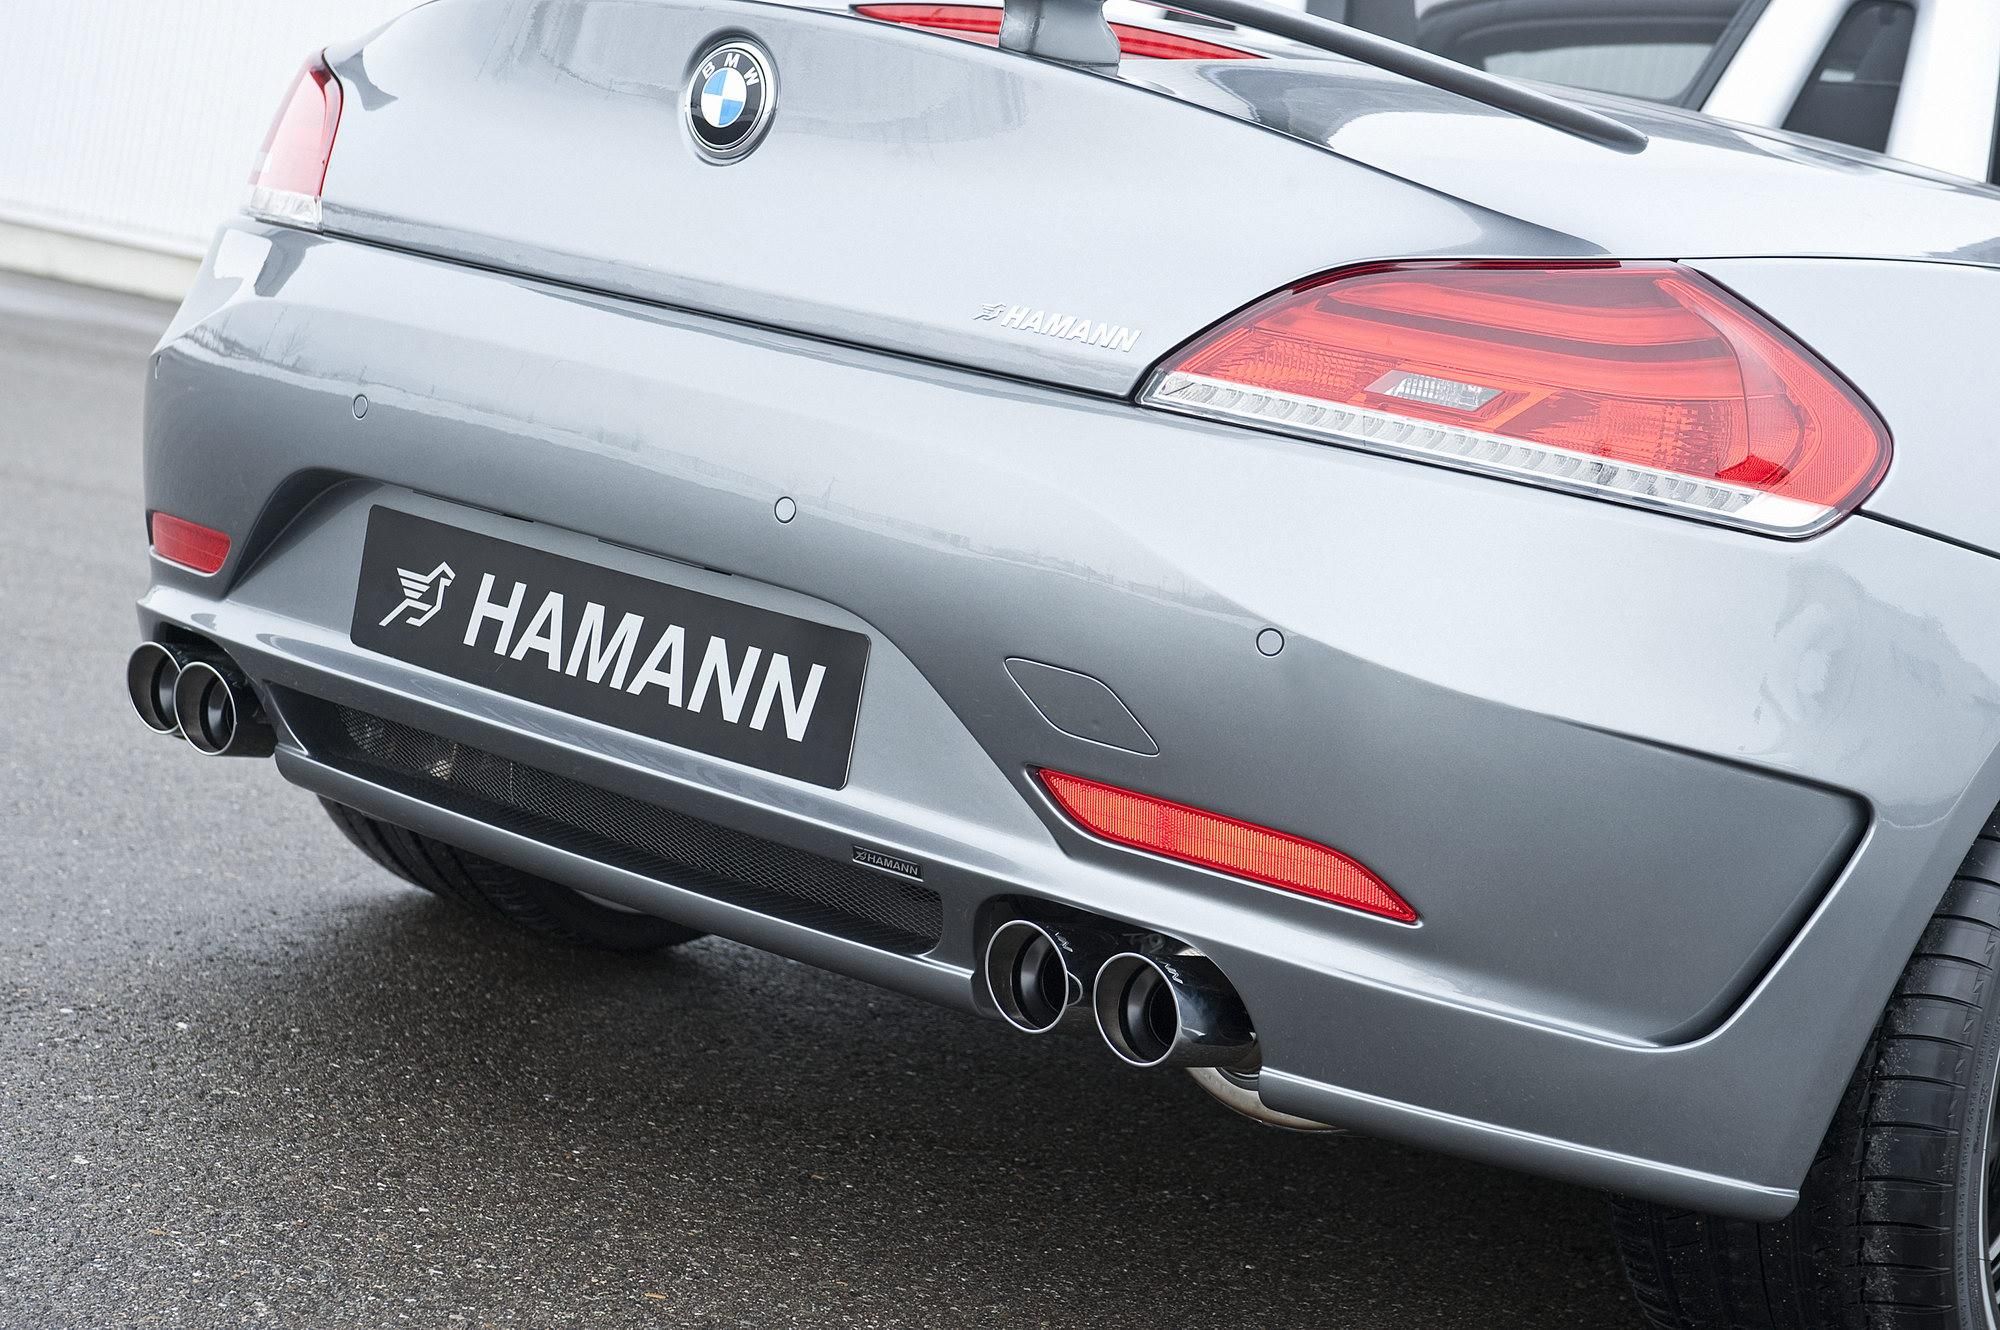 2010 BMW Z4 Roadster by Hamann